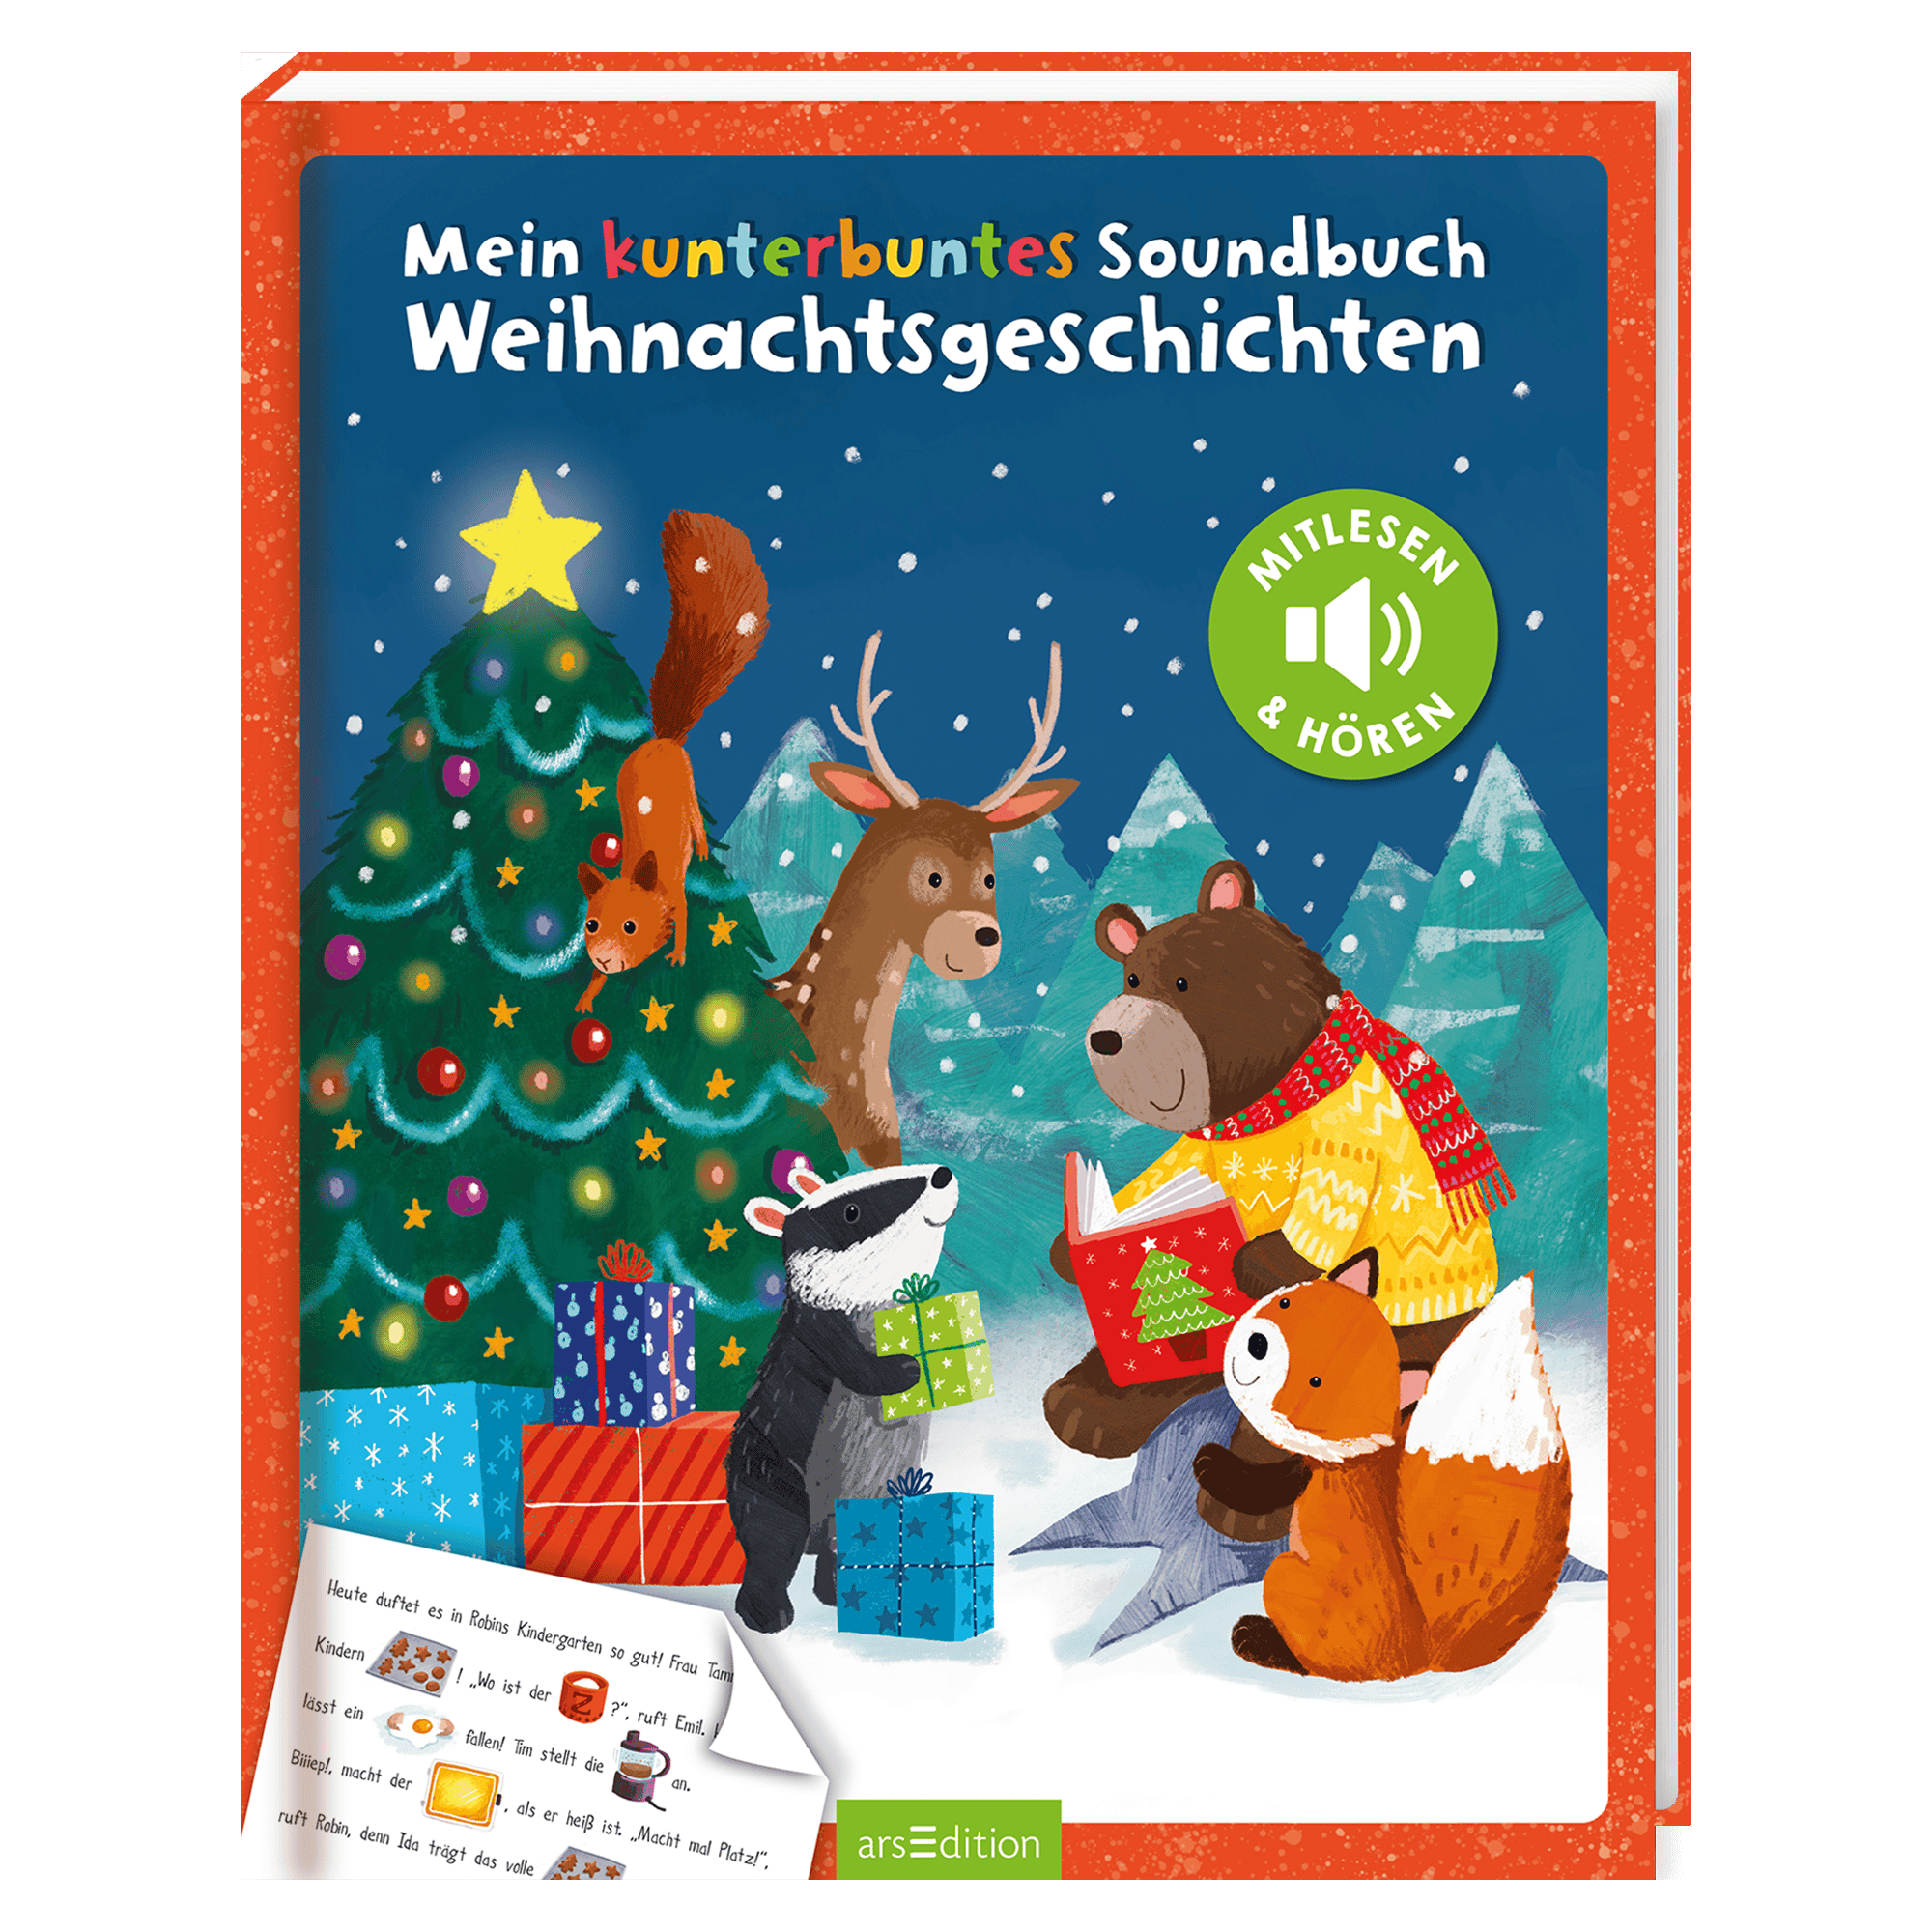 Mein kunterbuntes Soundbuch - Weihnachtsgeschichten arsEdition 2000583797203 1